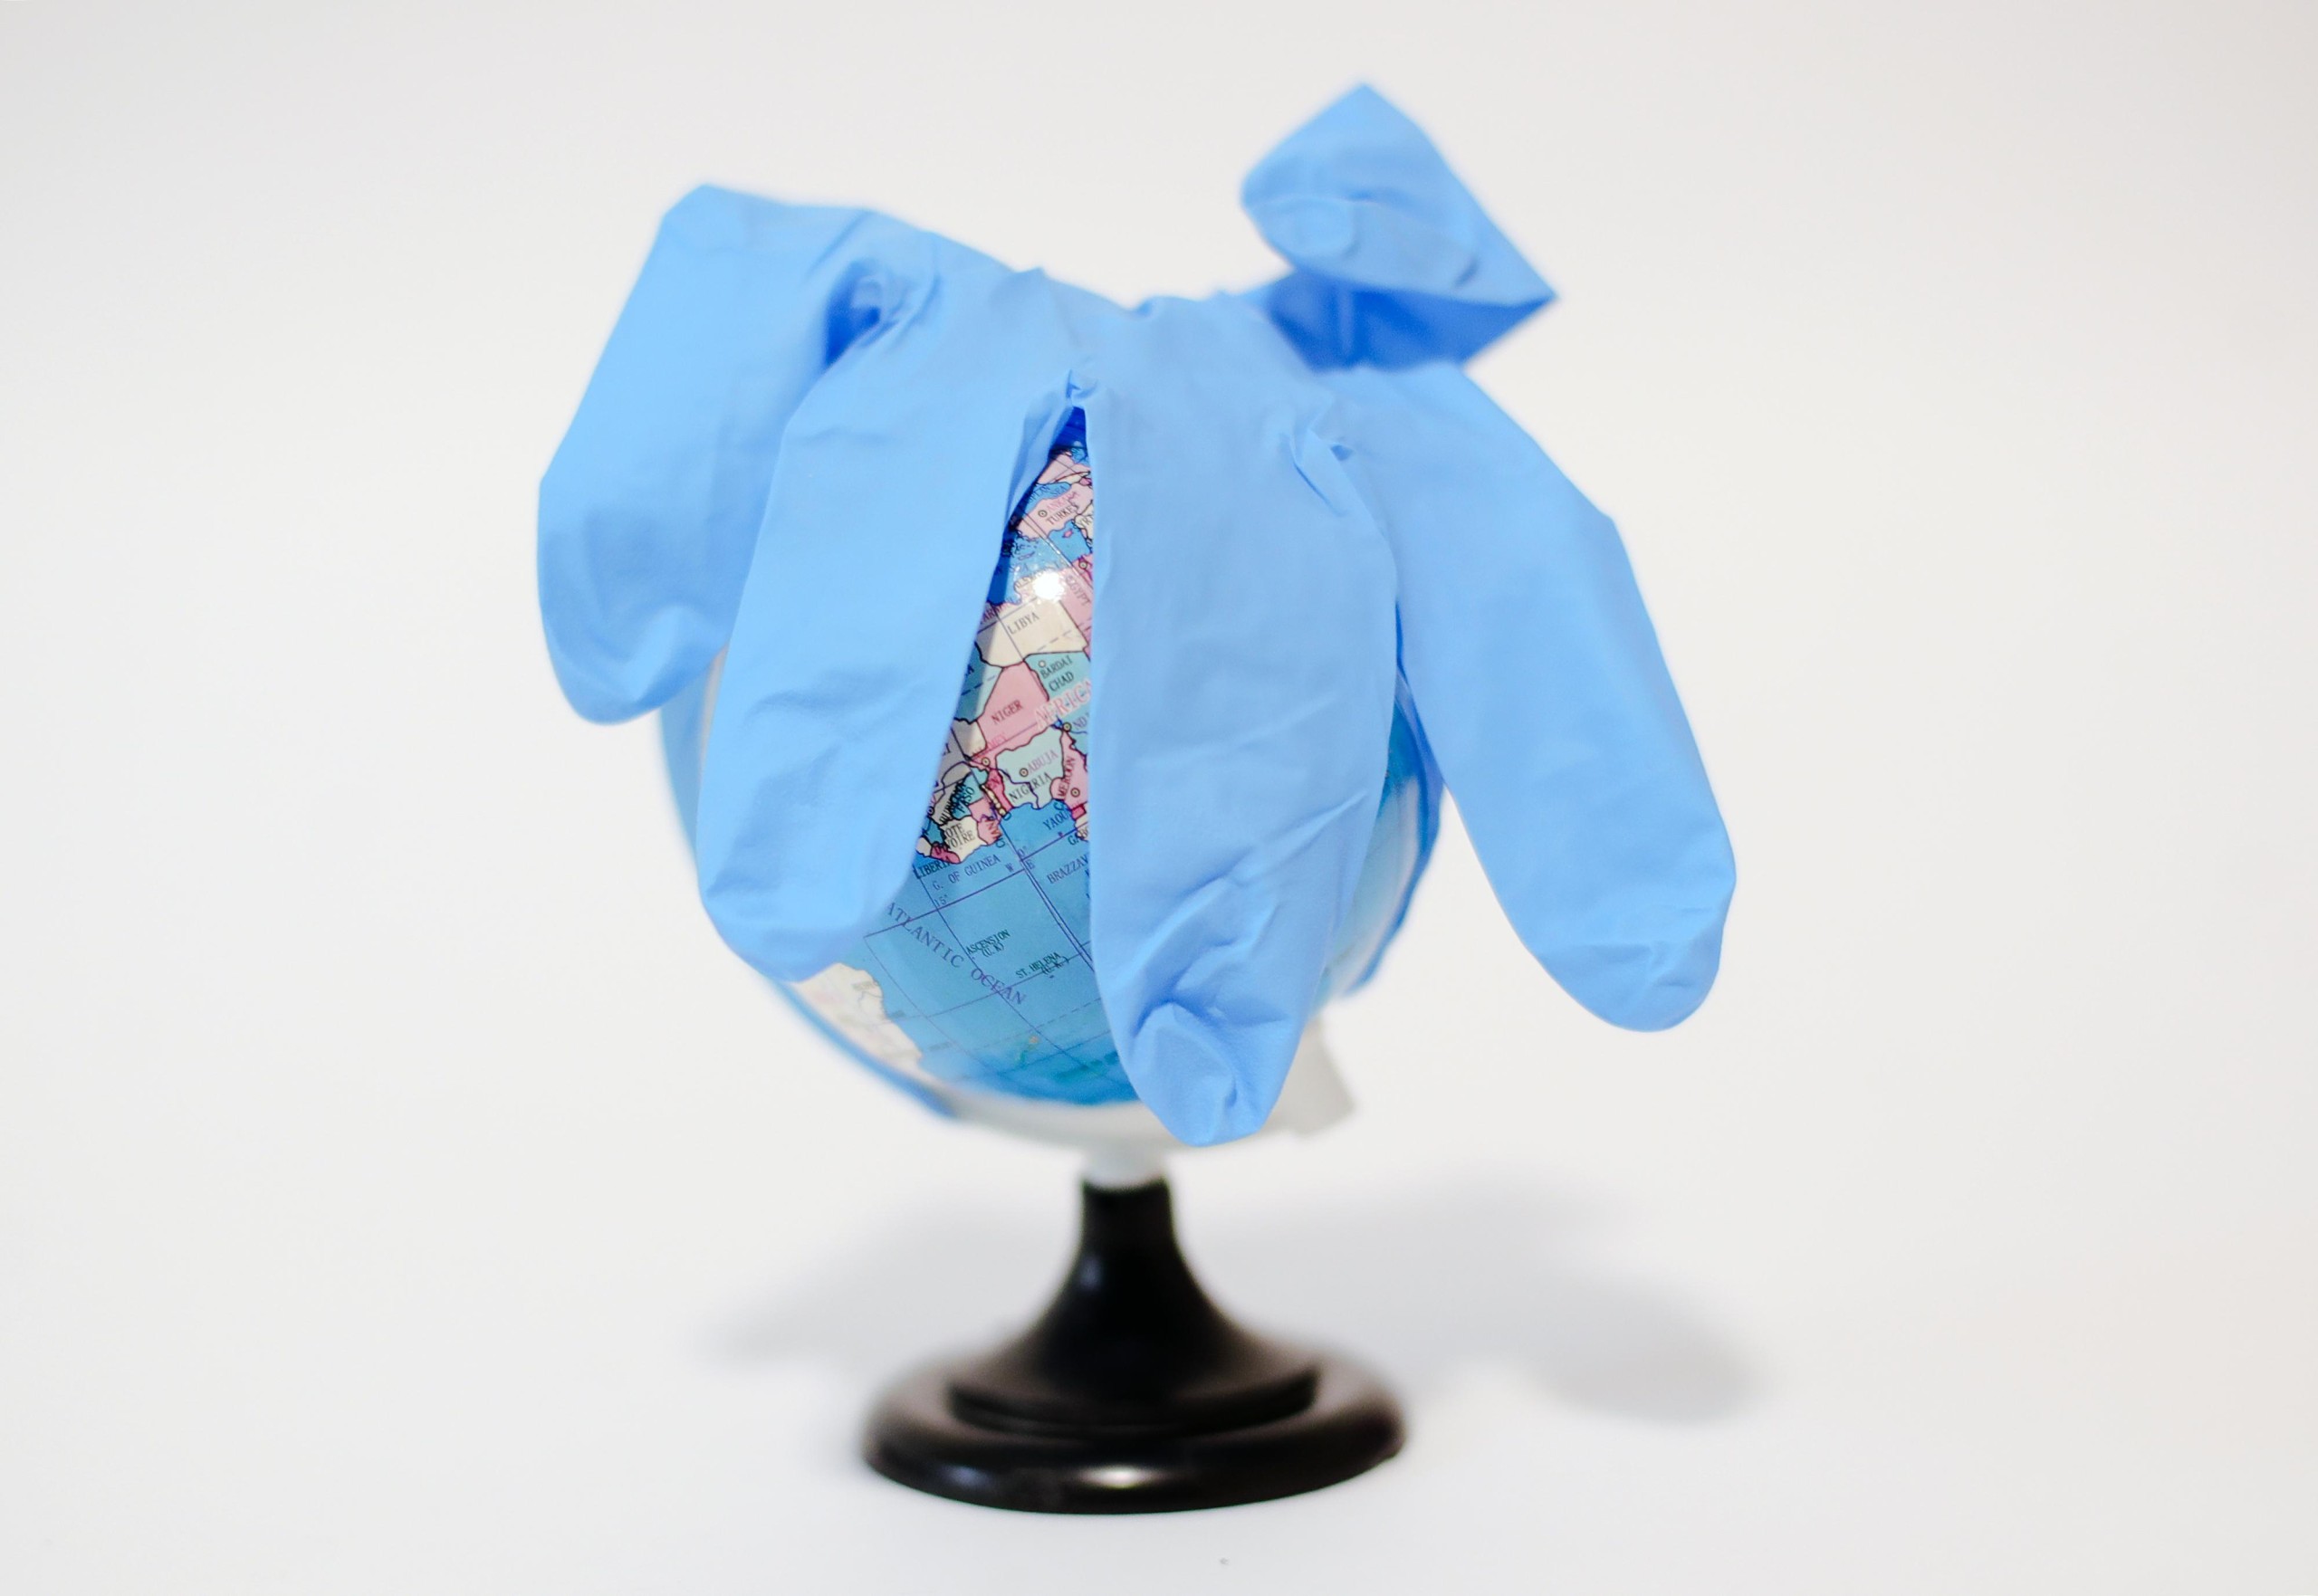 09.10.2021., Zagreb - Ilustracija. Plasticna rukavica na mini globusu simbolizira ilustracija za svjetsku pandemiju koronavirusa. Photo: Sanjin Strukic/PIXSELL